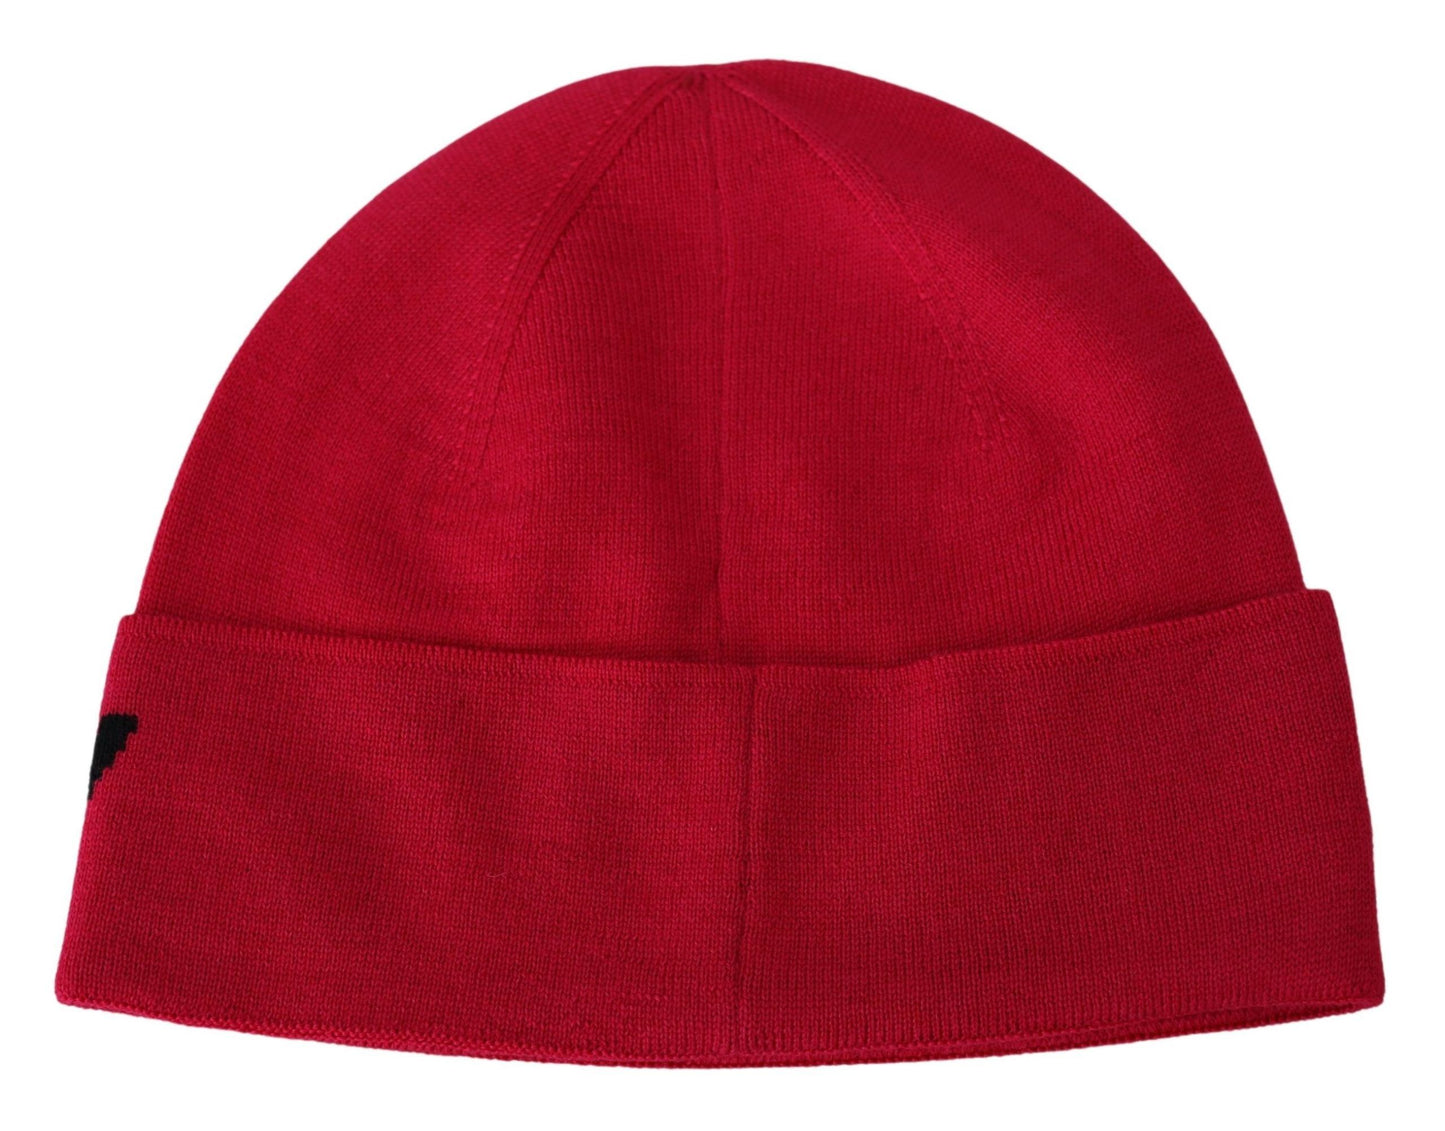 Givenchy rouge rose rose beanie unisexe hommes femmes bonnet chapeau